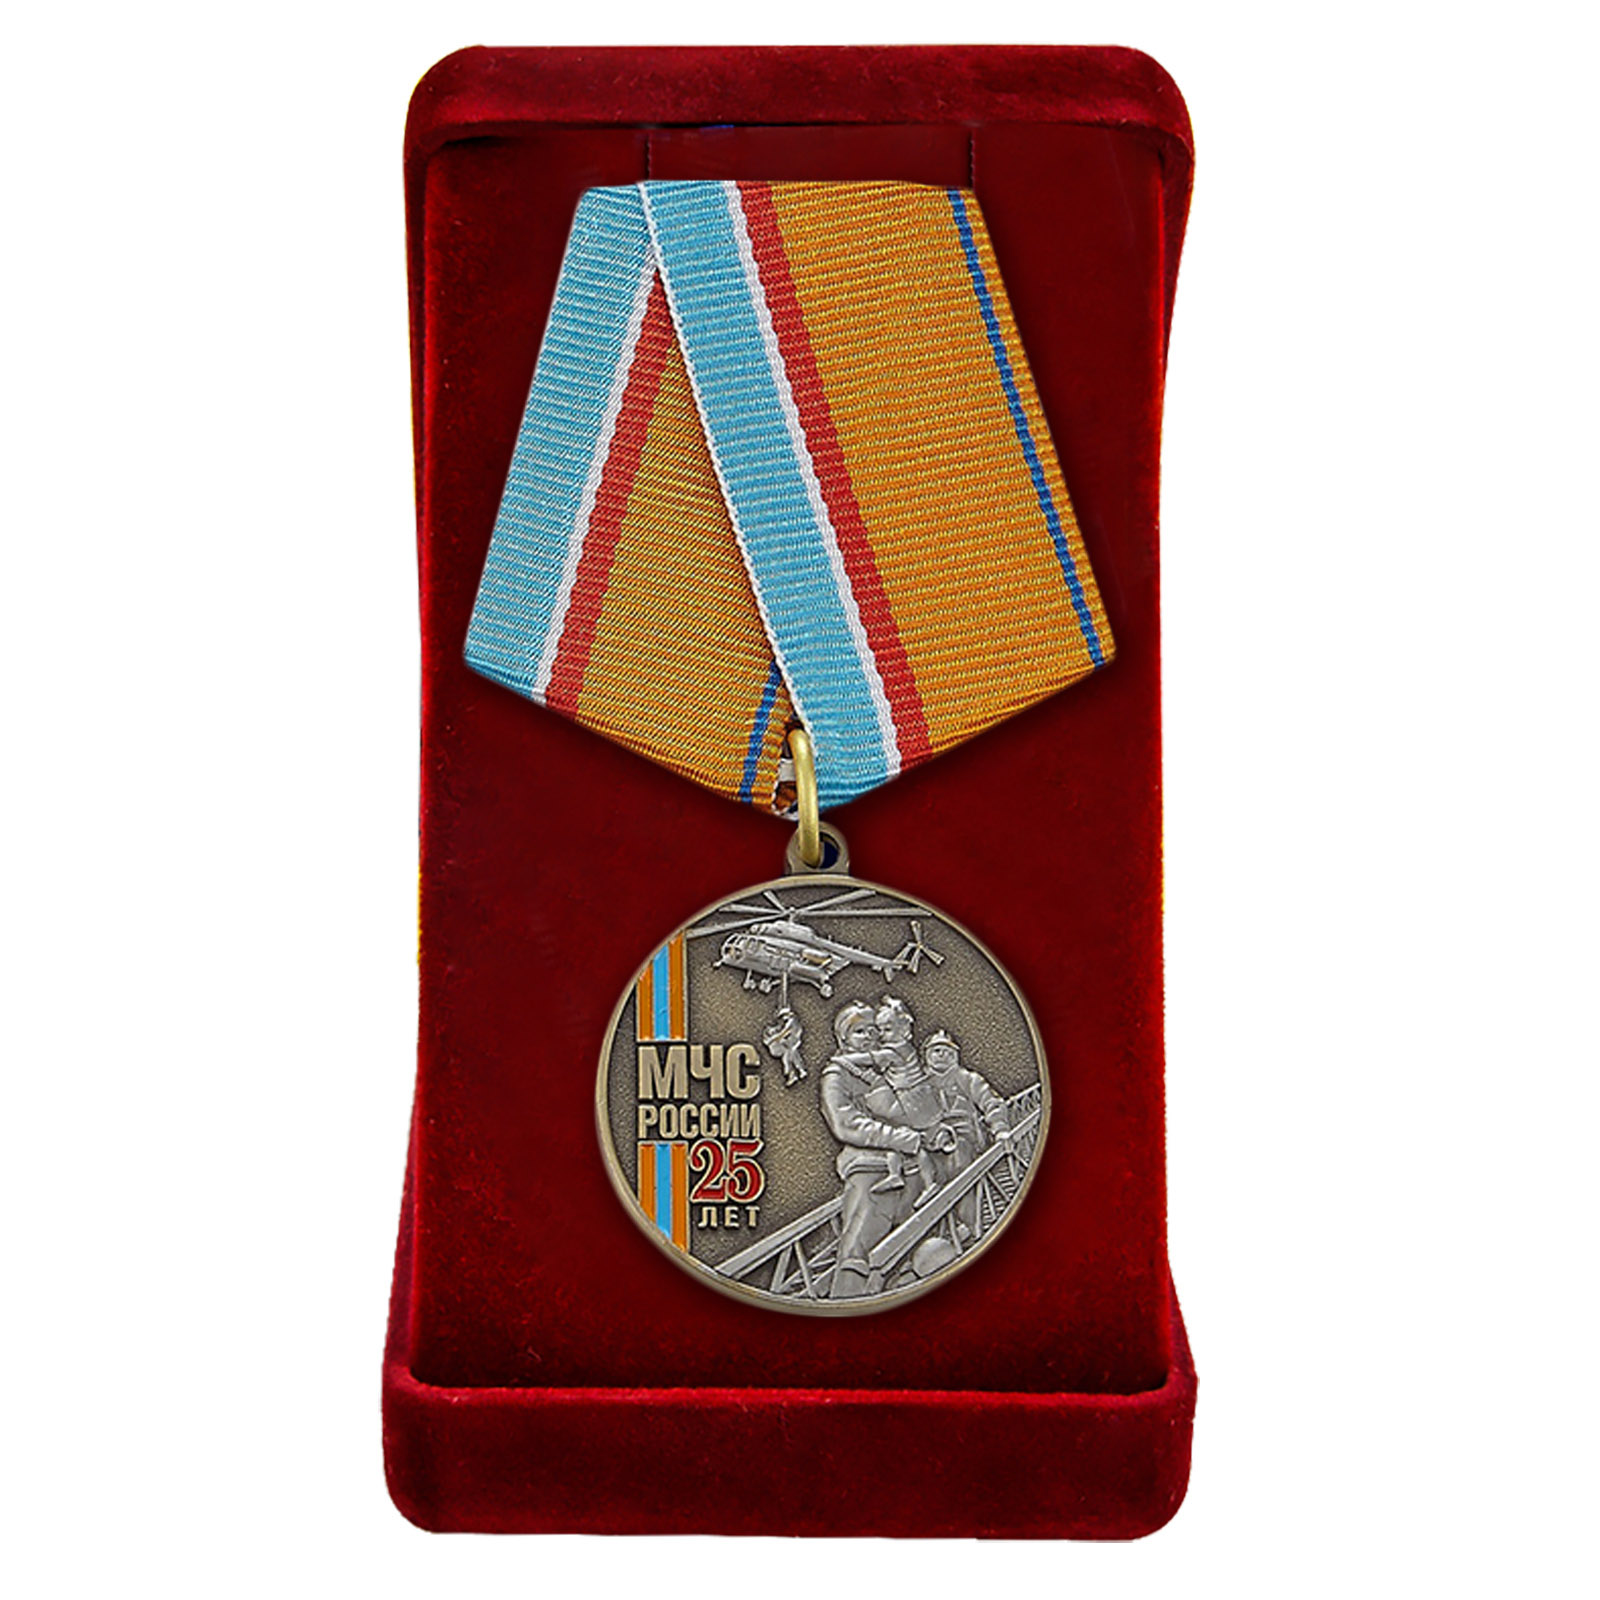 Купить памятную медаль "МЧС России 25 лет" по экономичной цене